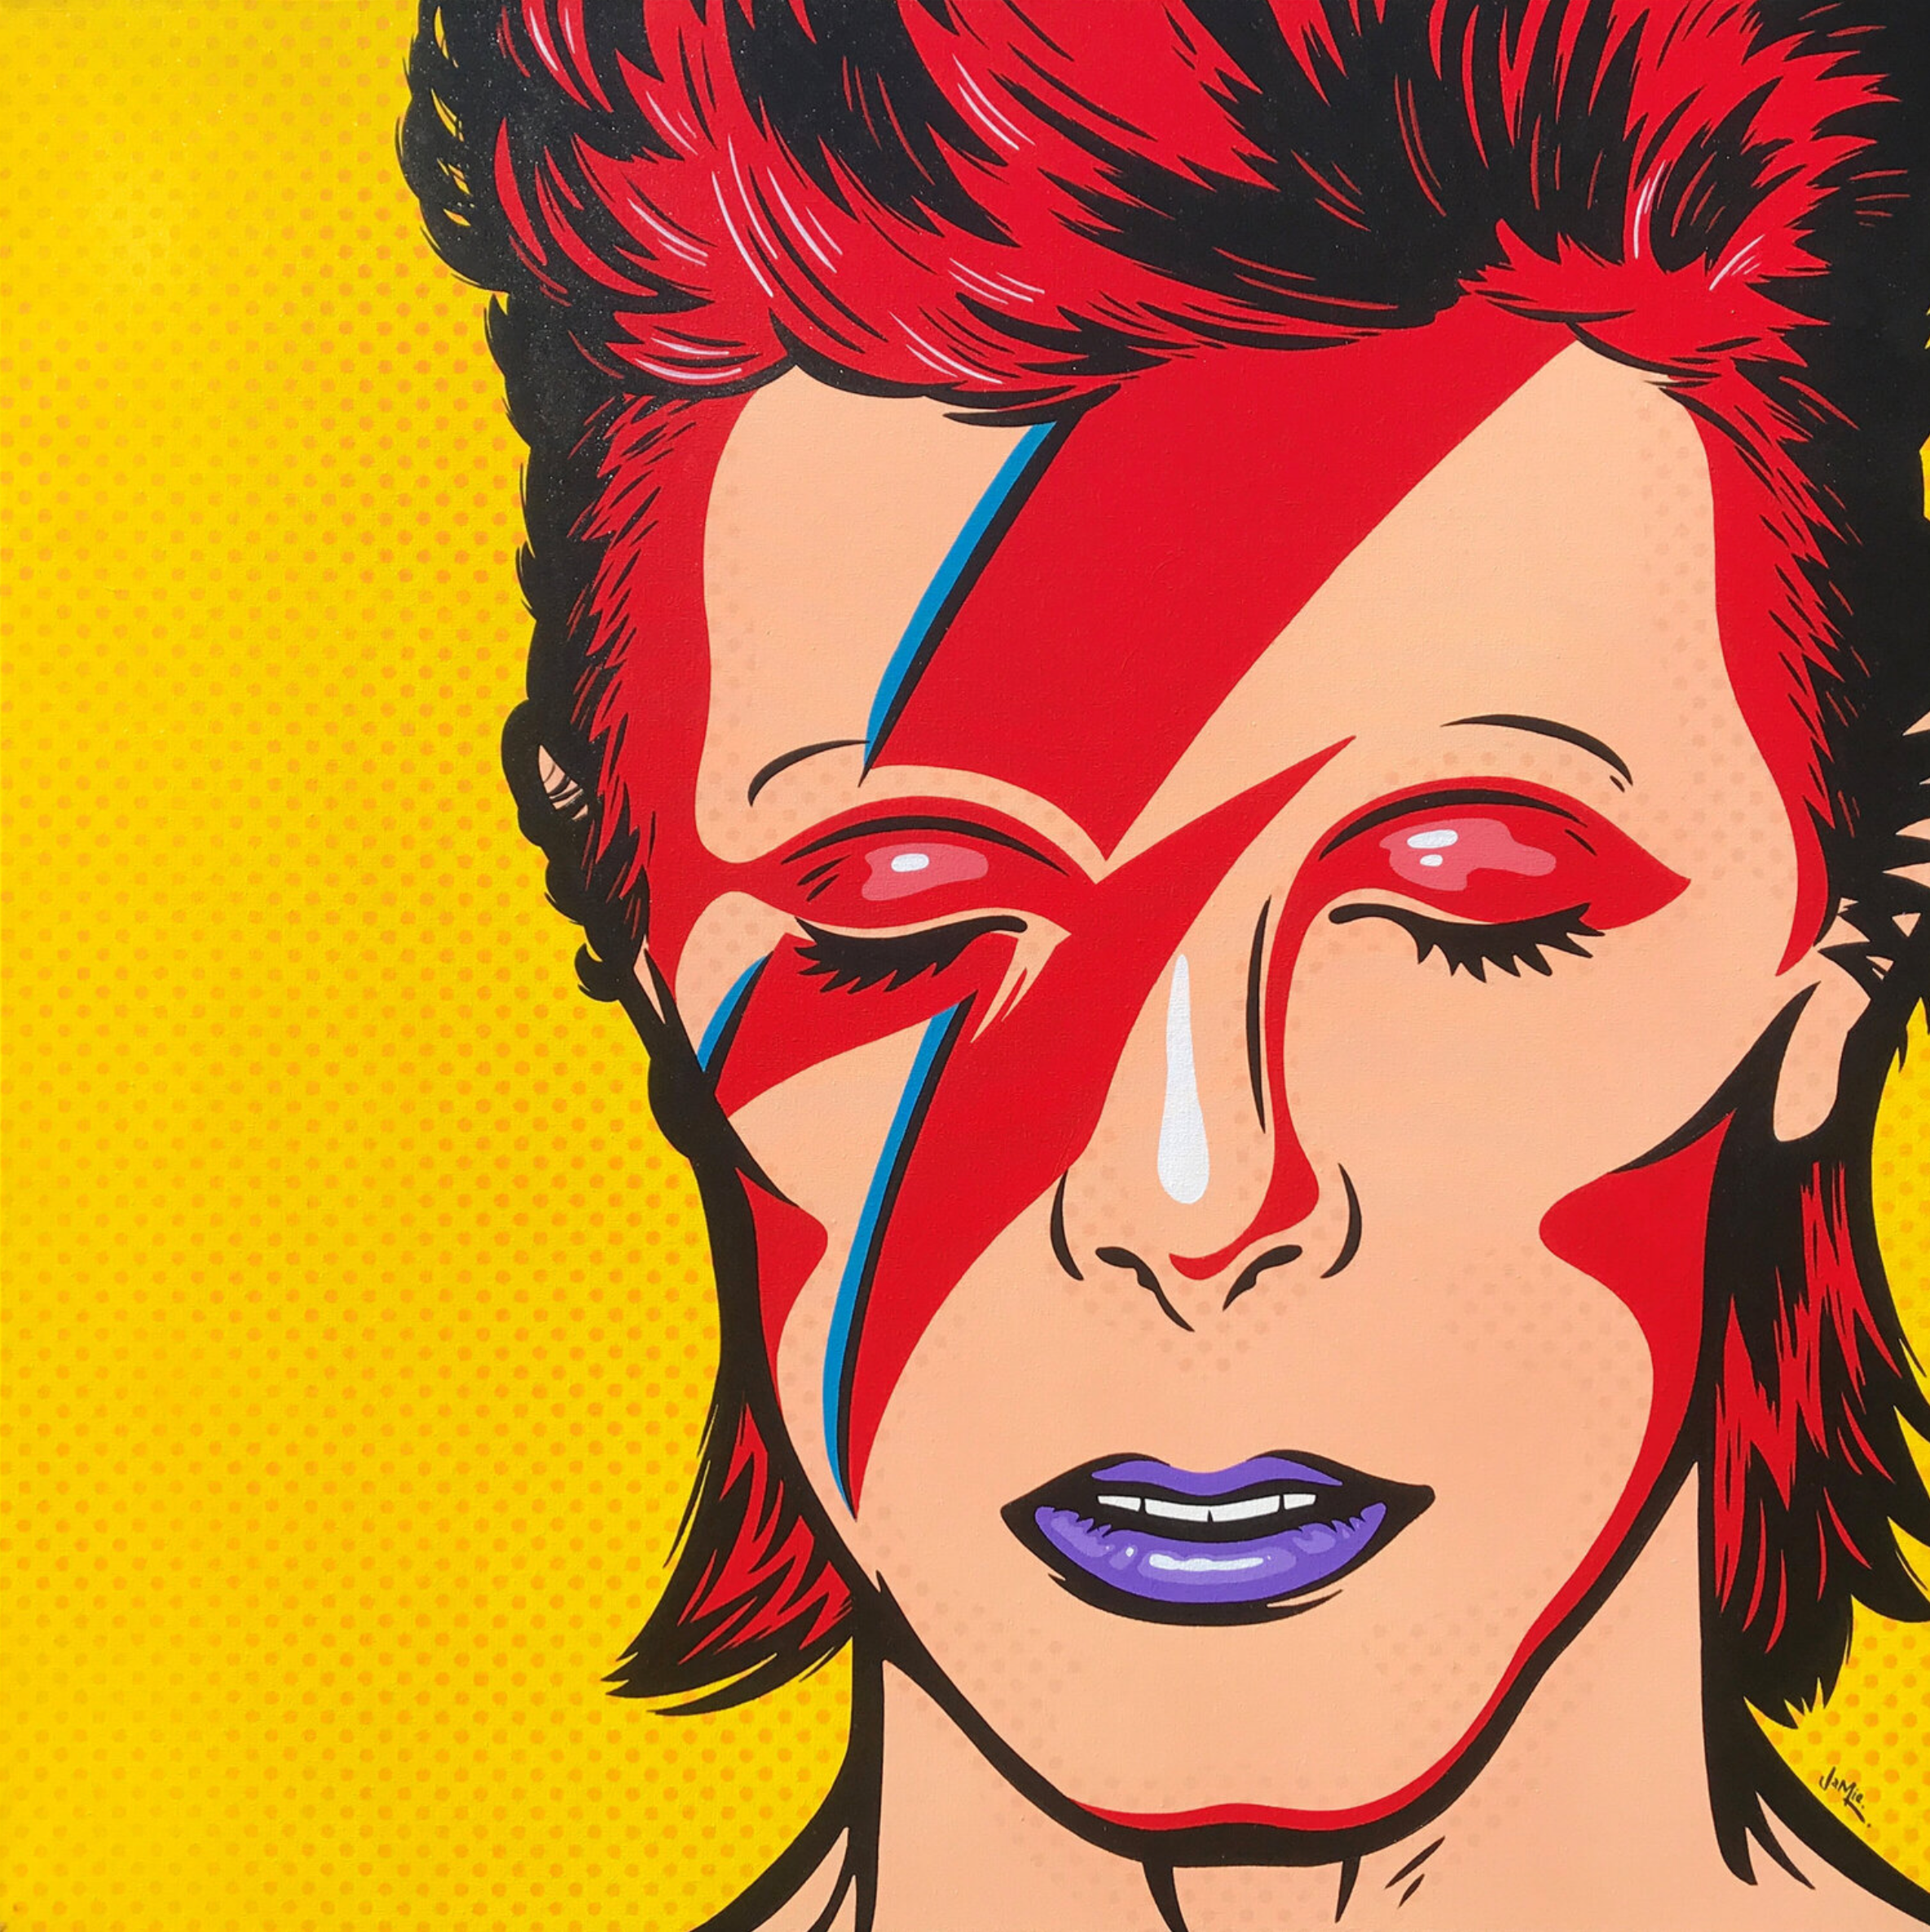 Peinture pop art "David Bowie" de Jamie Lee, de style bande dessinée et au design original. David Bowie en Aladdin Sane sur un fond de points jaunes. Version pop art peinte à la main dans le style bande dessinée de la légendaire image de la pochette de l'album.